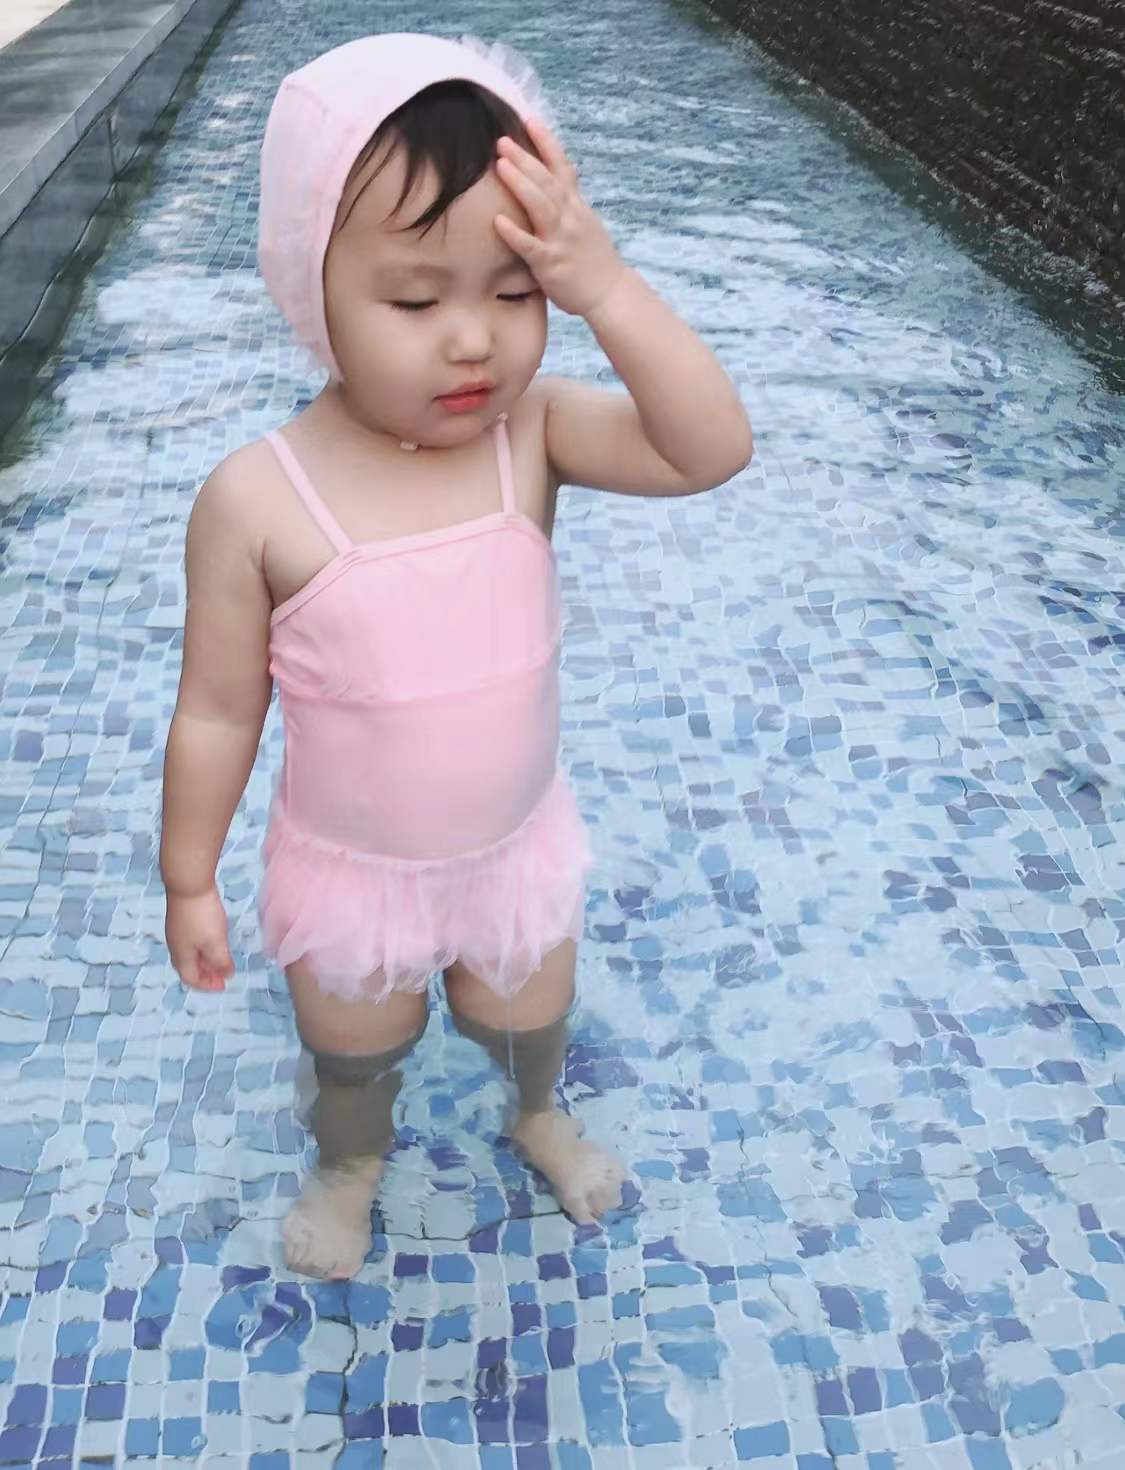 Đưa con gái 2 tuổi đi bơi, bà mẹ trẻ méo mặt khi thấy vật thể lạ trên mặt nước, động tác chữa cháy của phía bể bơi khiến nhiều người phải gật gù - Ảnh 1.